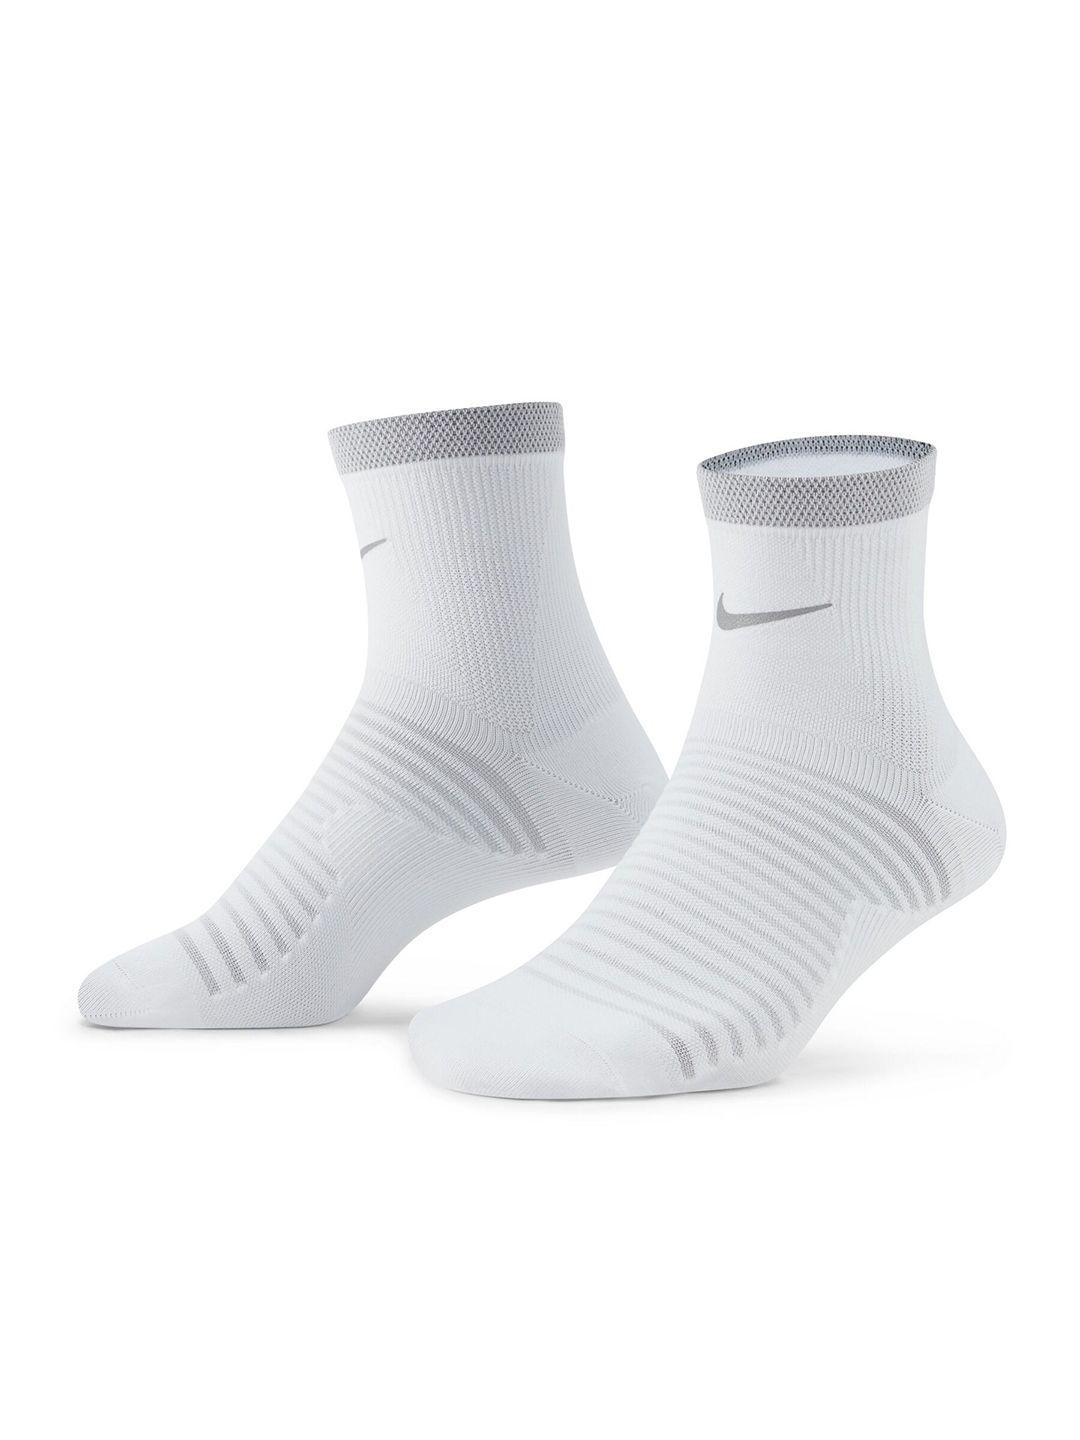 nike-spark-cotton-lightweight-running-ankle-socks